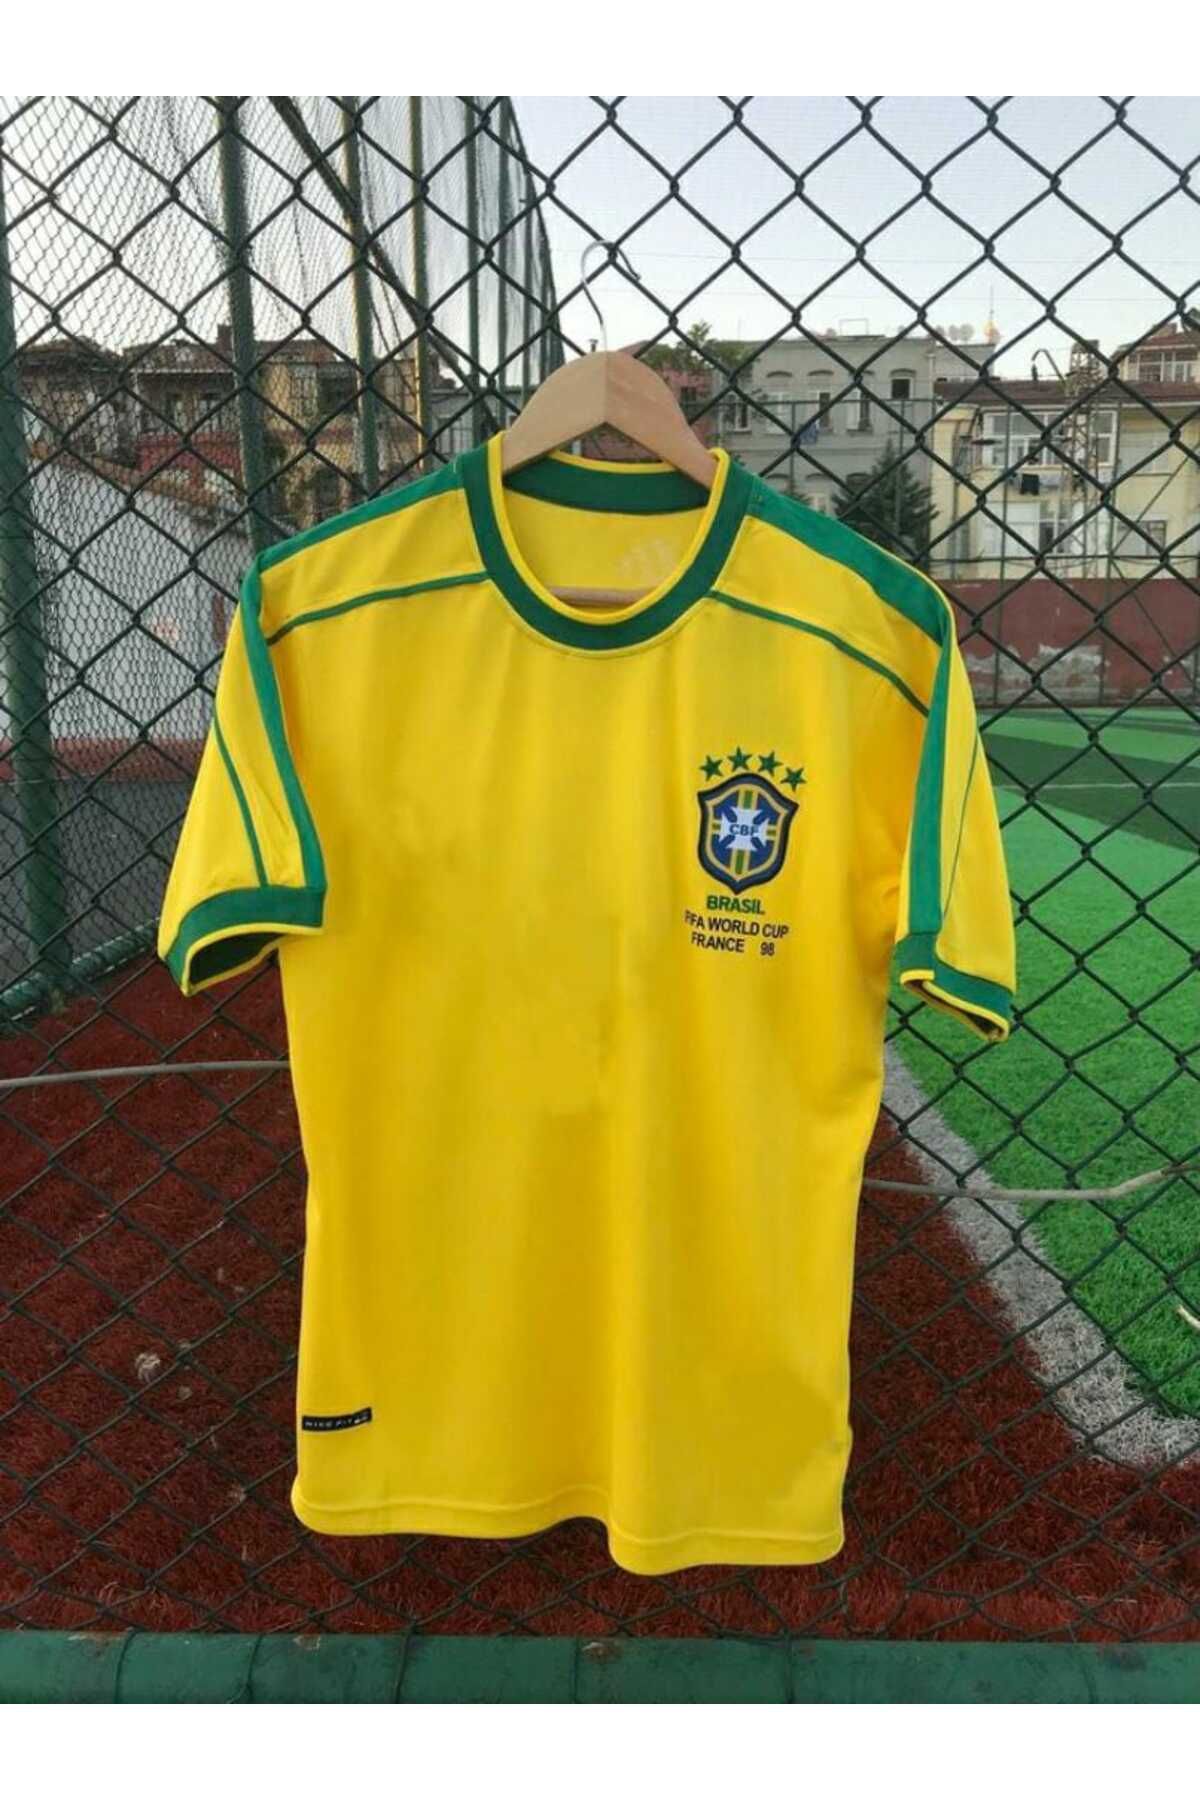 BYSPORTAKUS Brezilya Milli Takımı 98 Dünya Kupası Ronaldinho Nostalji Forması